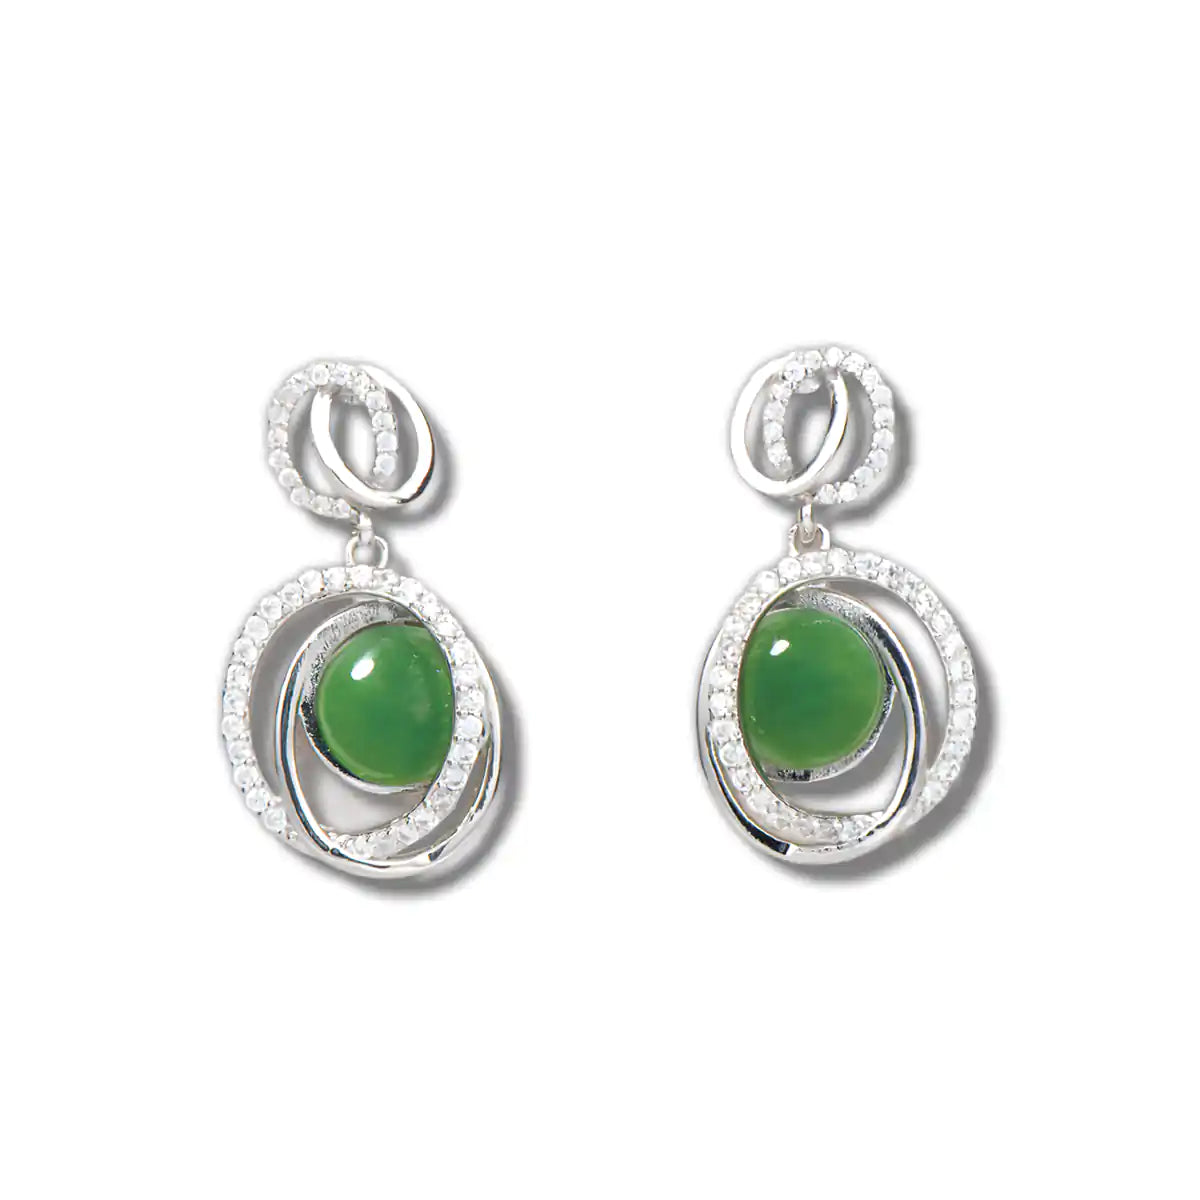 Jade debonair earrings